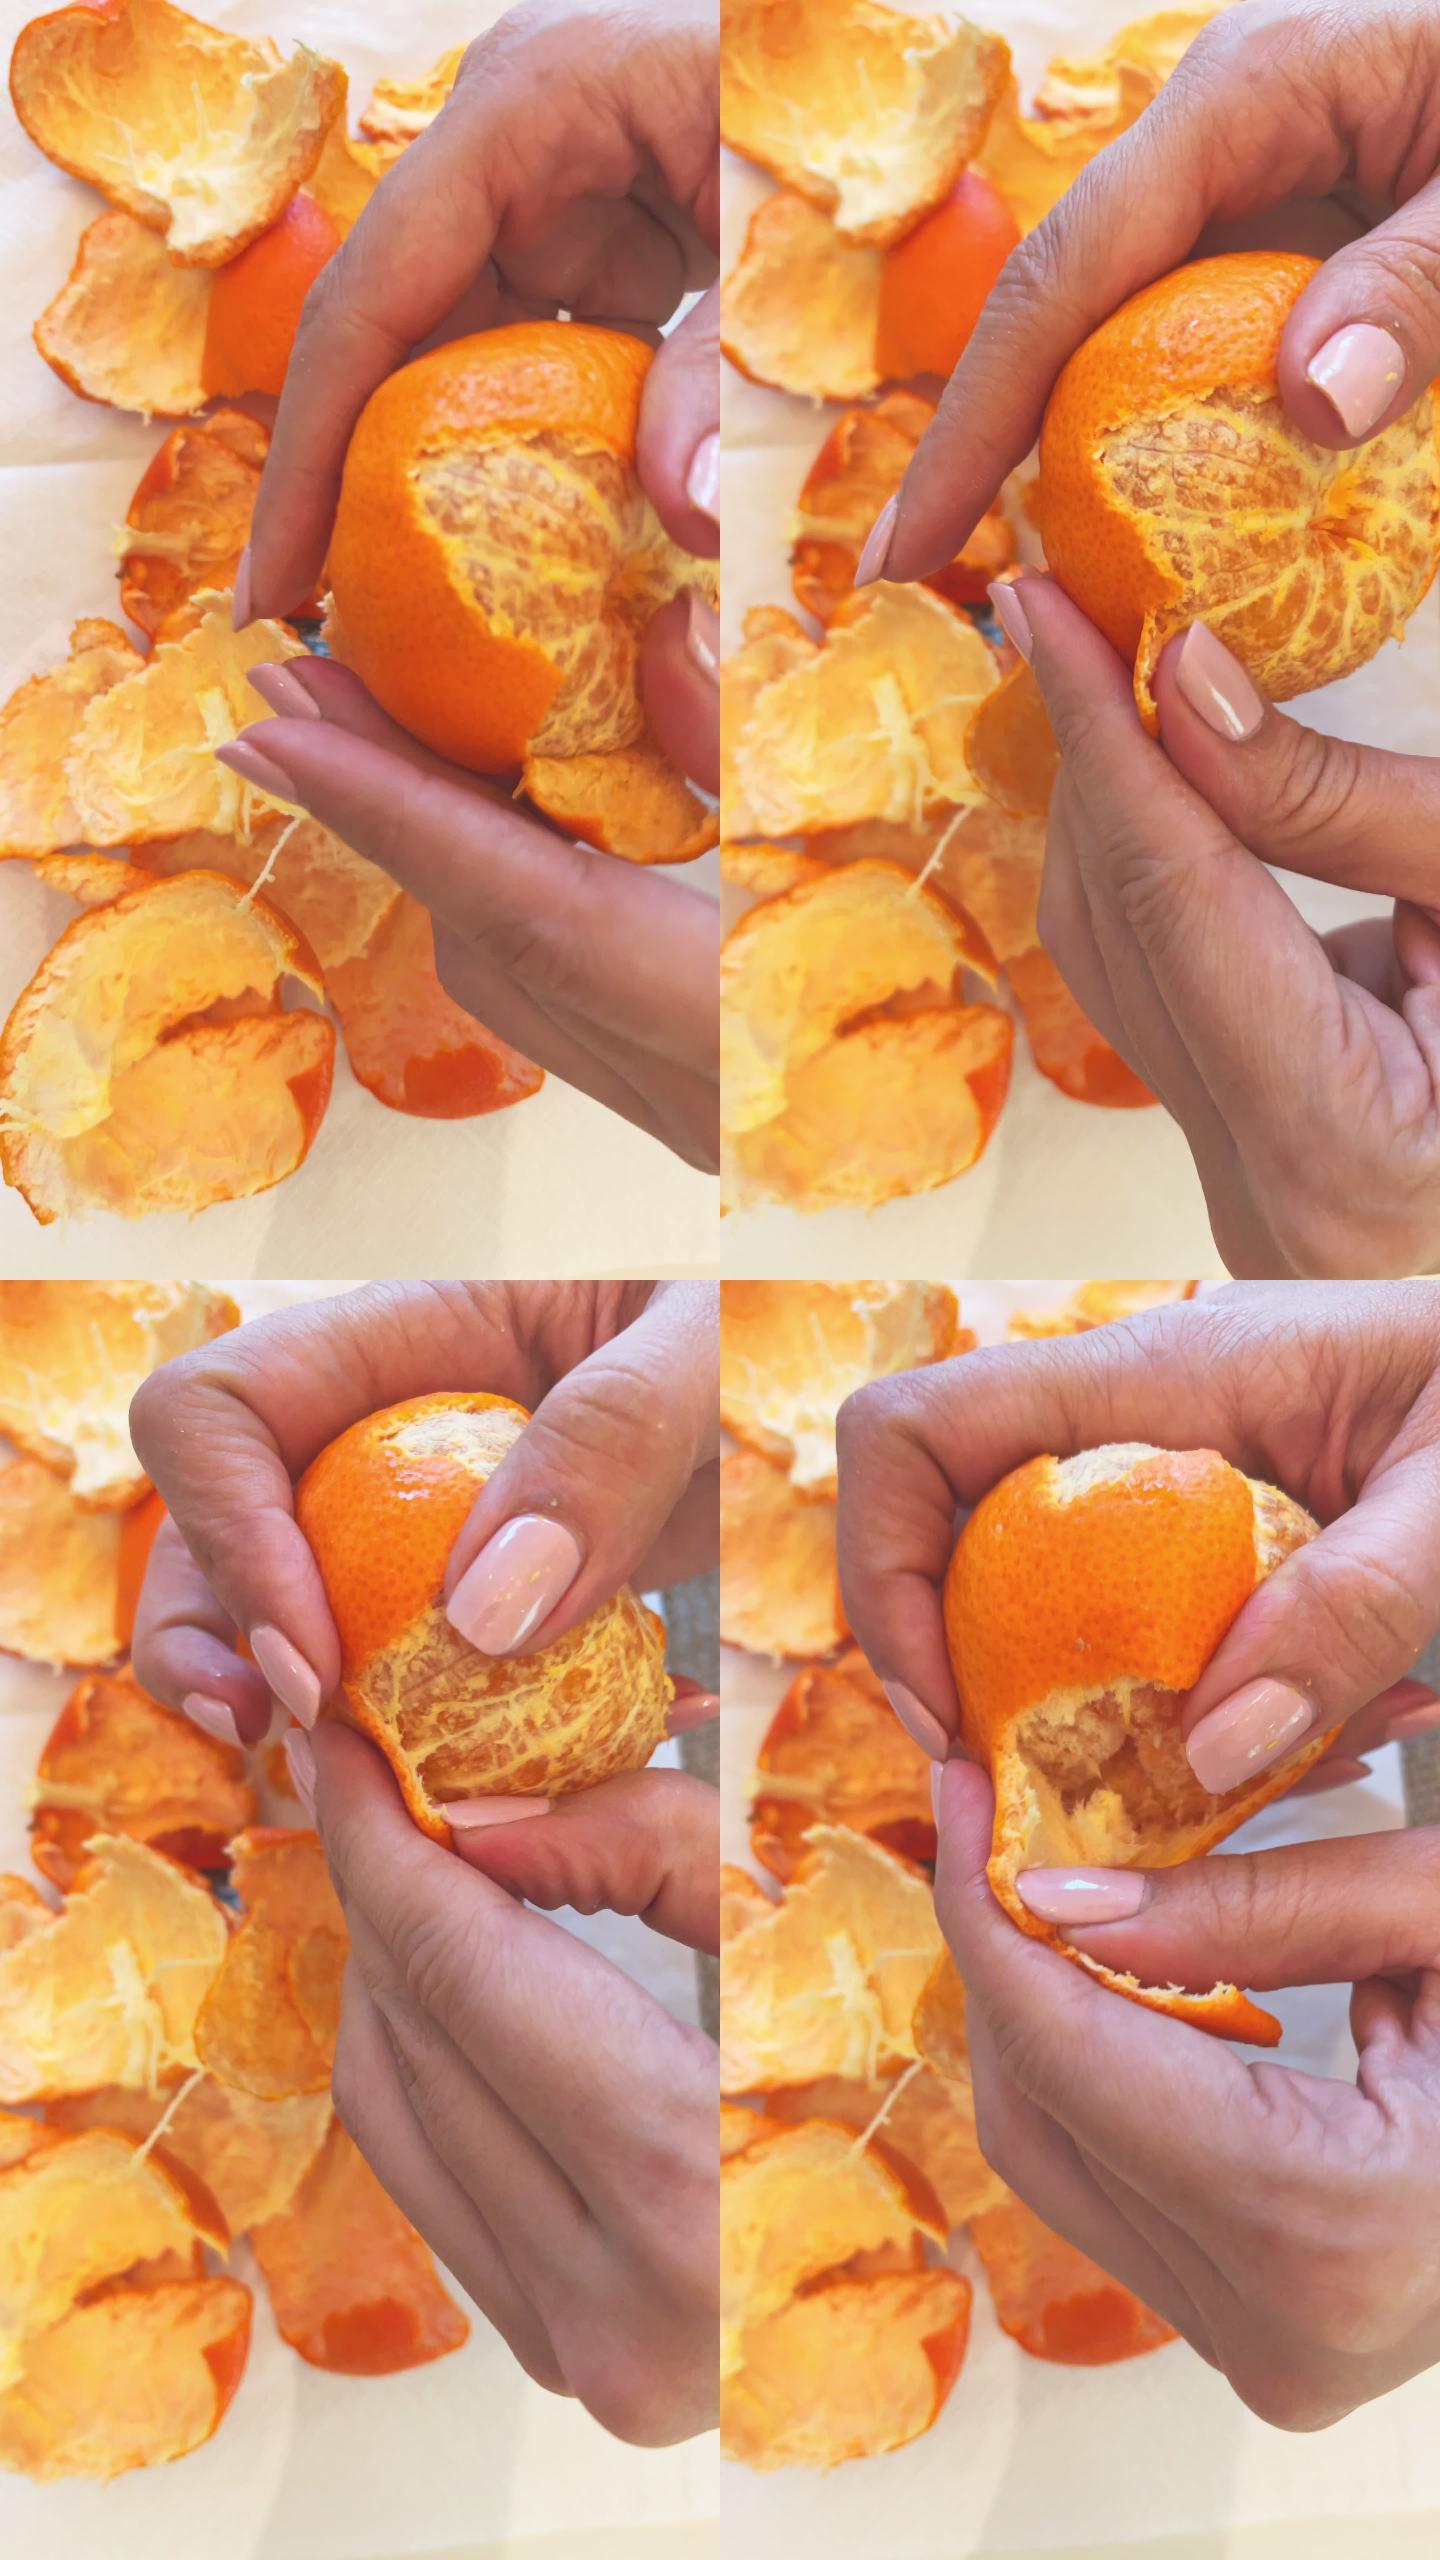 剥鲜橘子的女人撕桔子皮